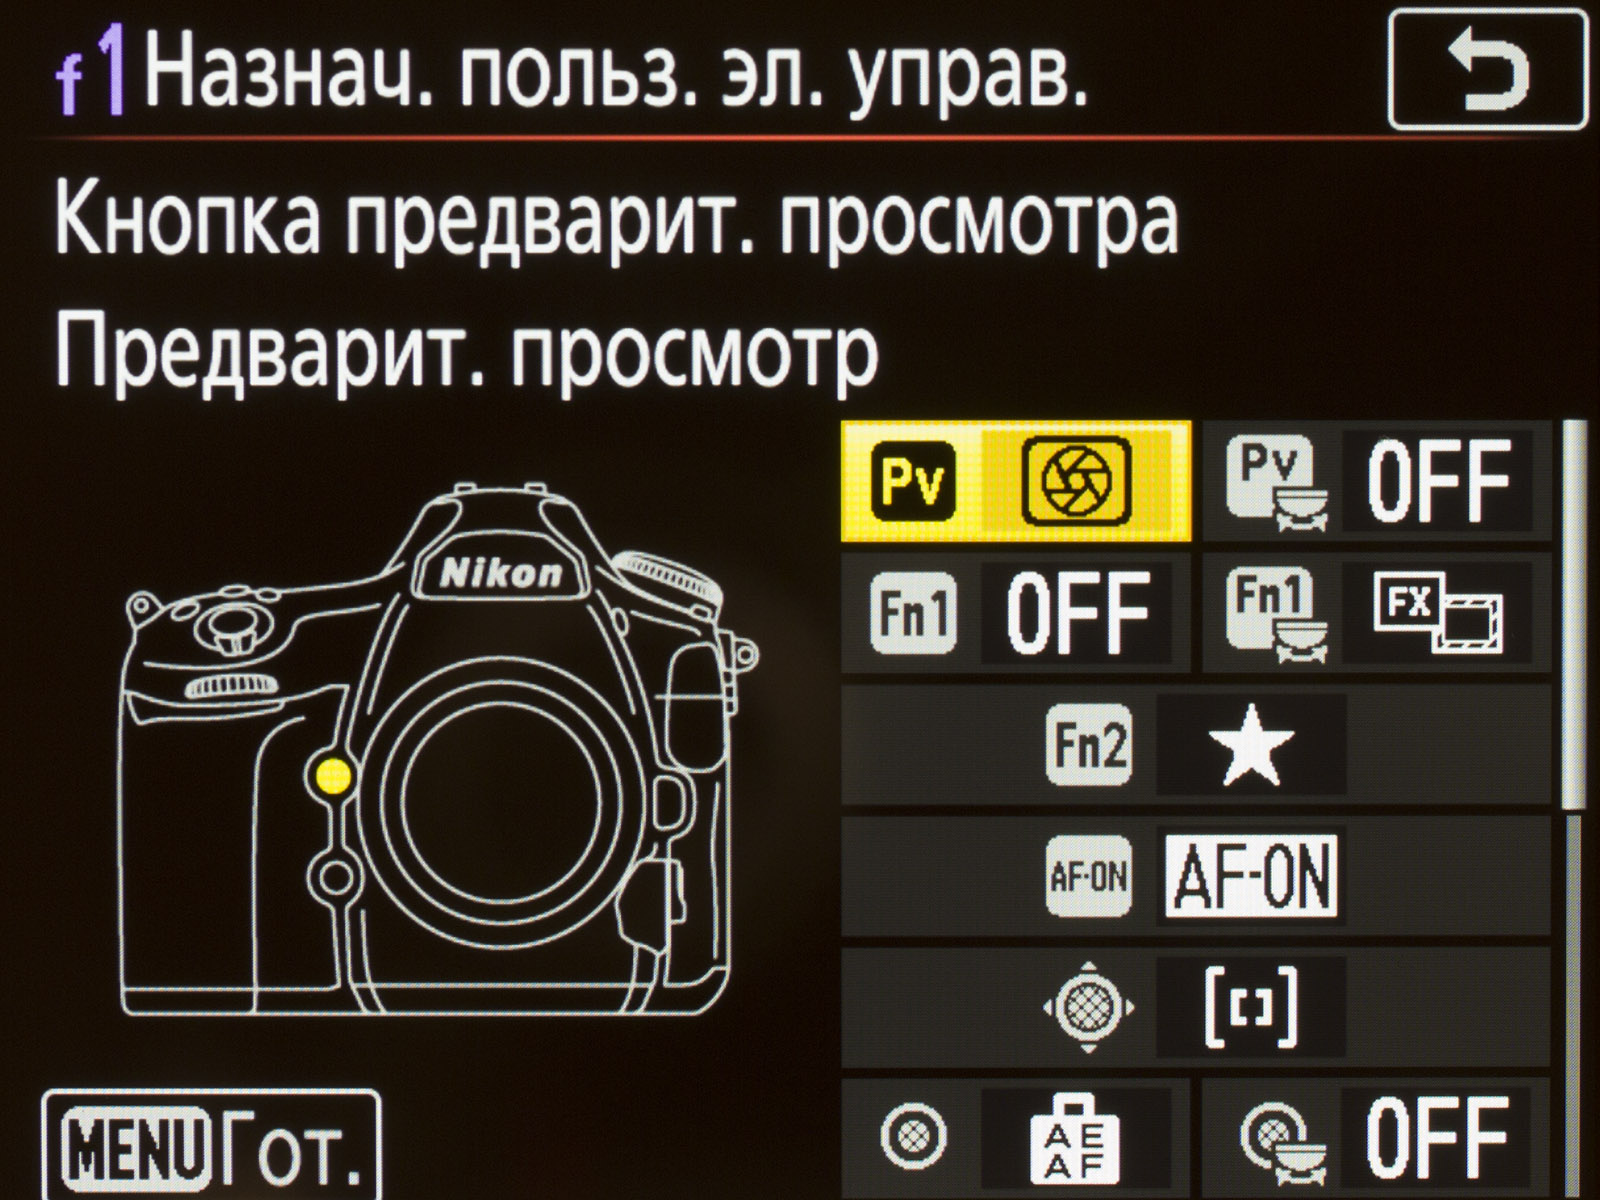 Стандартные настройки камеры. Настройки фотоаппарата. Nikon кнопка предварительного просмотра.